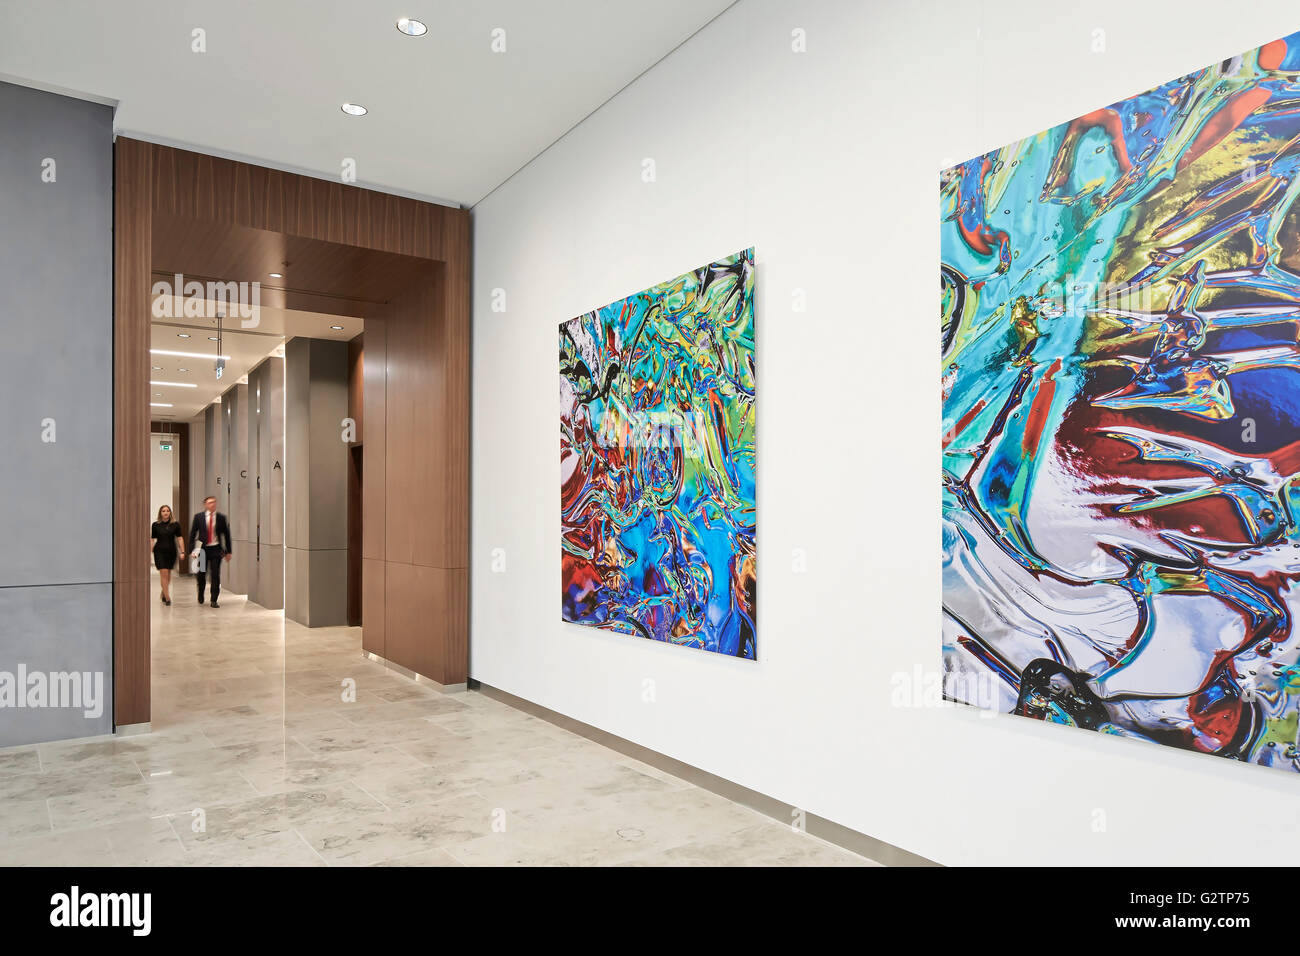 Couloir avec bureau d'art mural. Moorgate change, Londres, Royaume-Uni. Architecte : HKR Architects, 2015. Banque D'Images